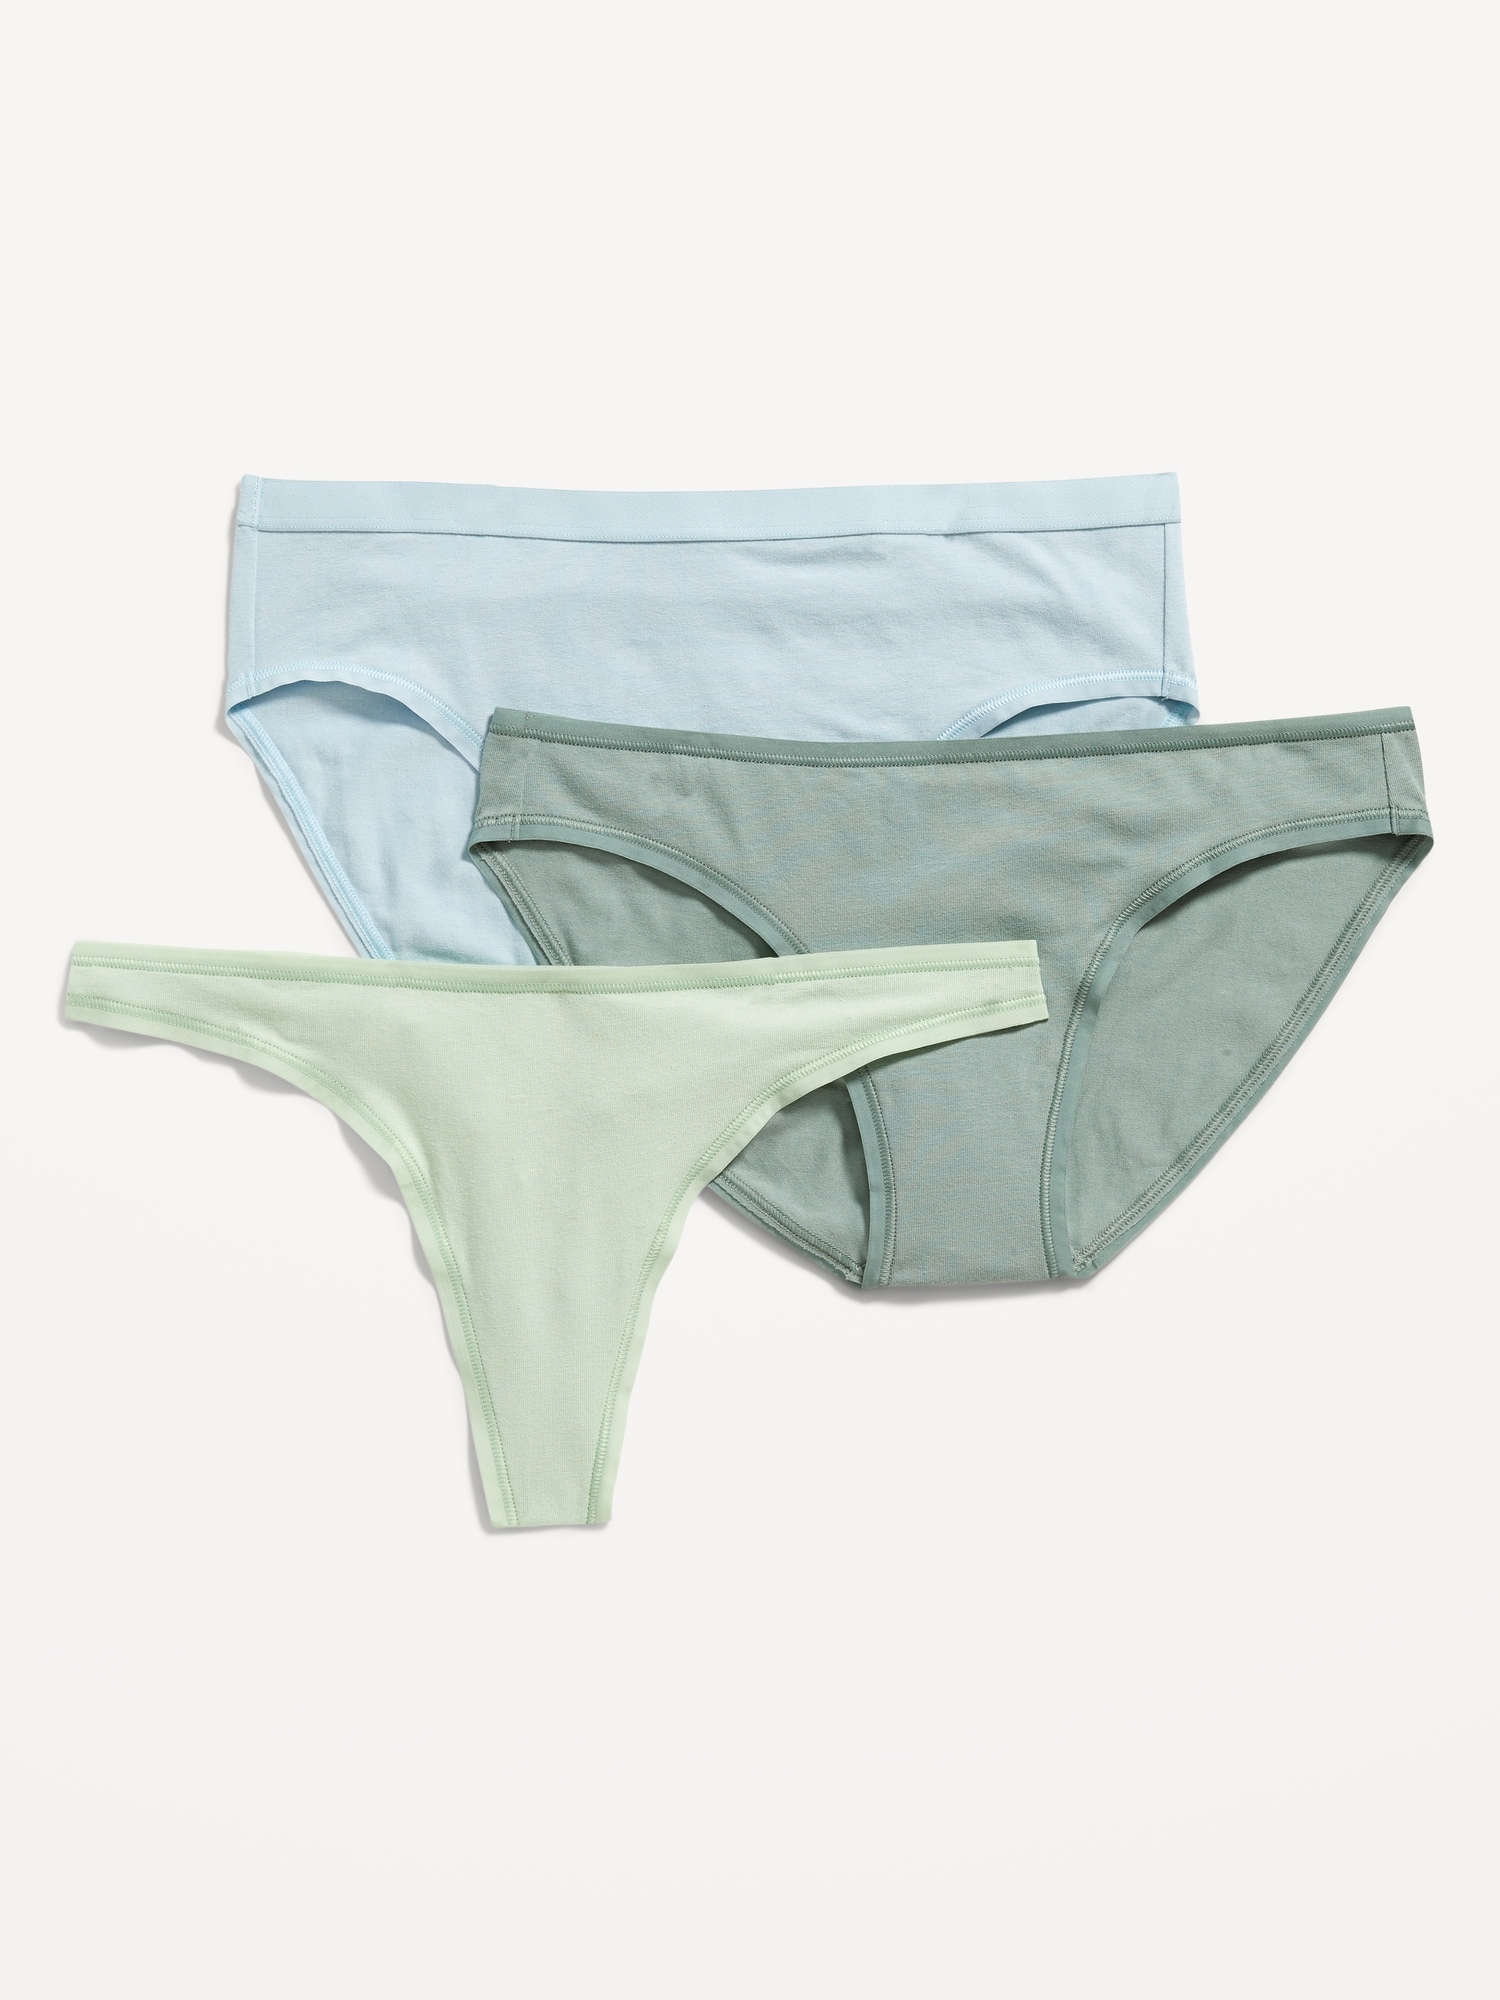 Cotton Blend Bikini Panty - 3 Pack